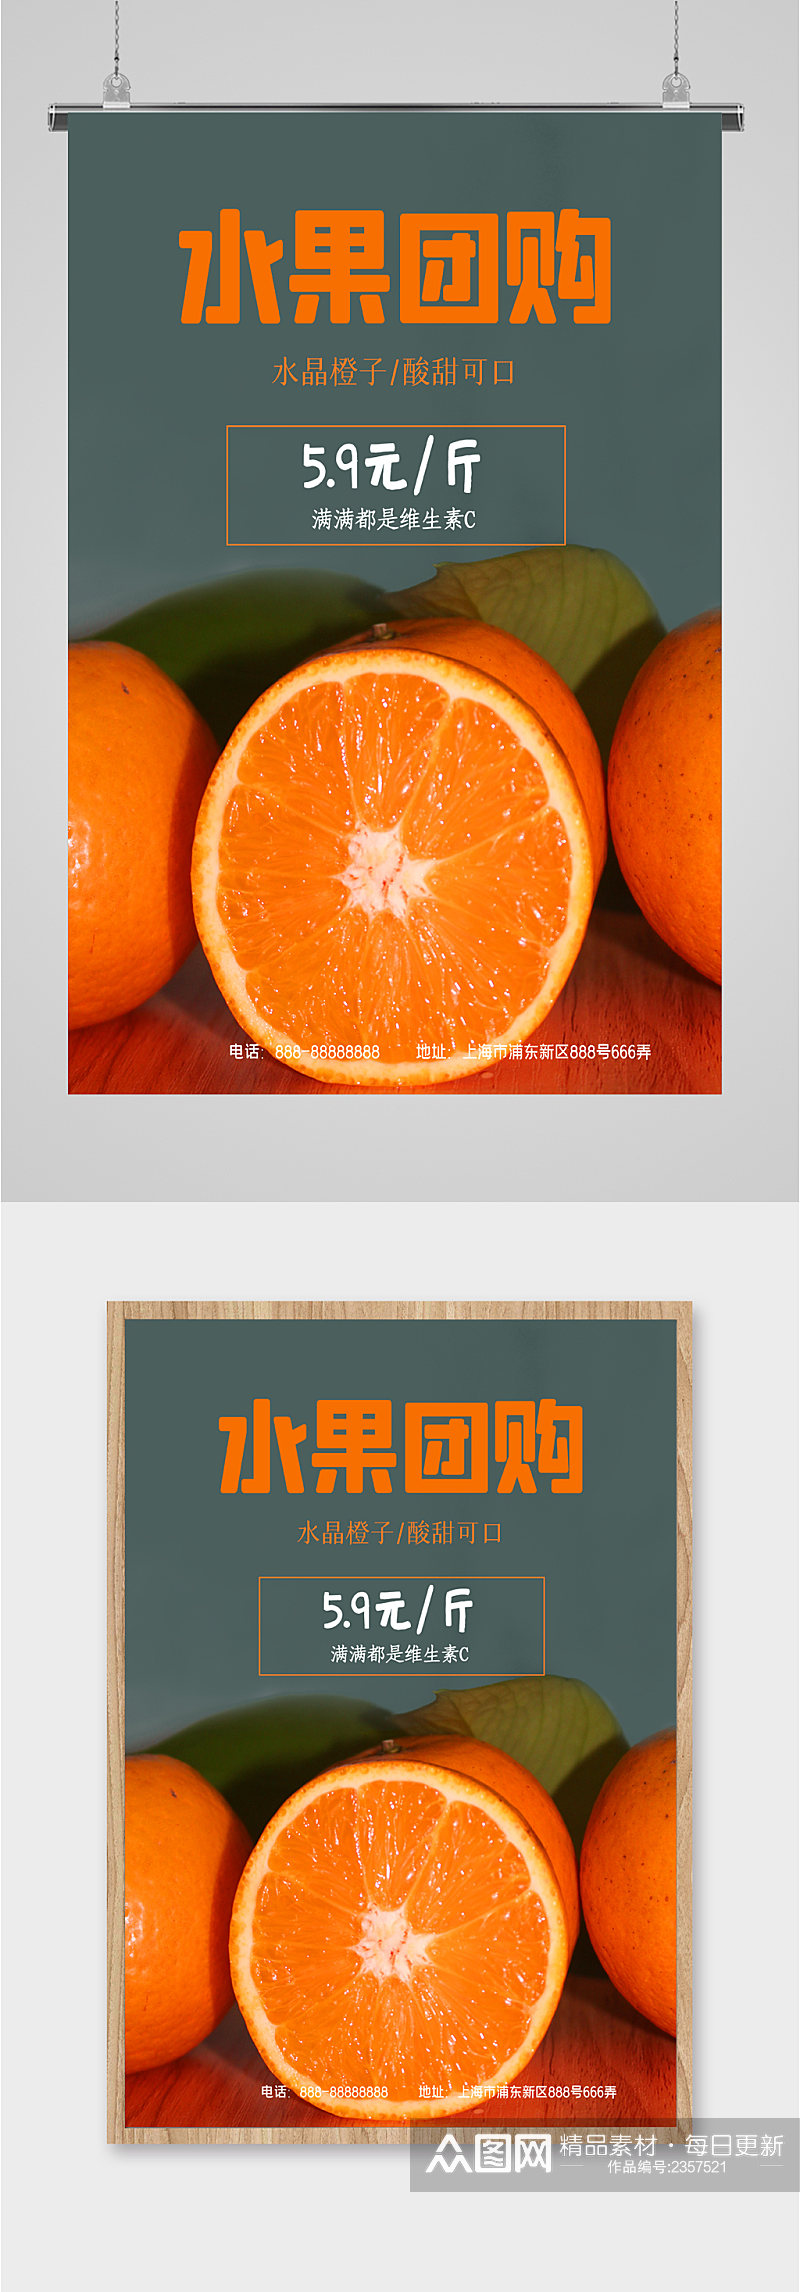 水果橙子团购促销海报素材